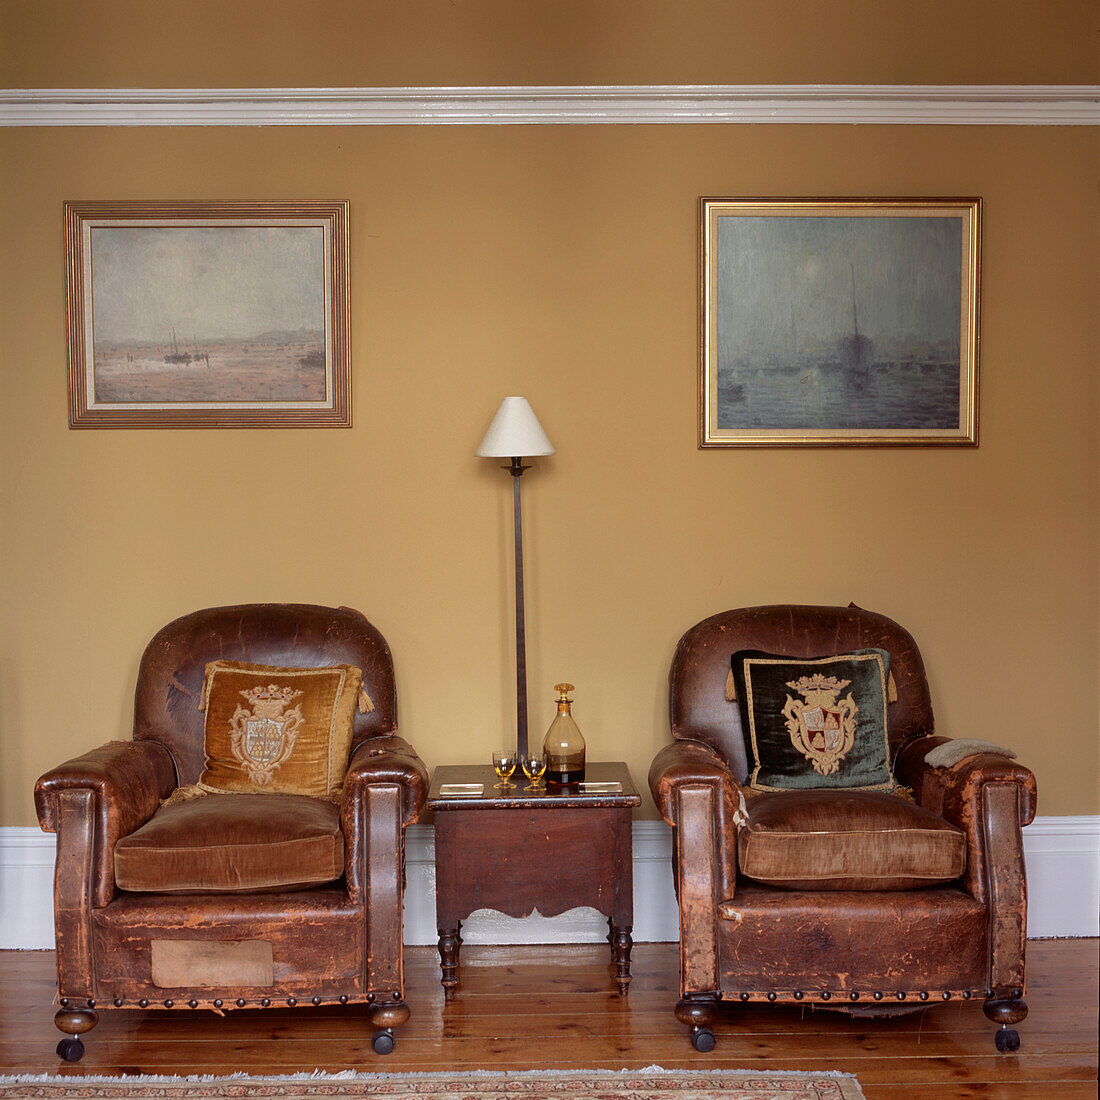 Zwei abgenutzte Vintage-Ledersessel in einem Wohnzimmer mit gelb gestrichenen Wänden